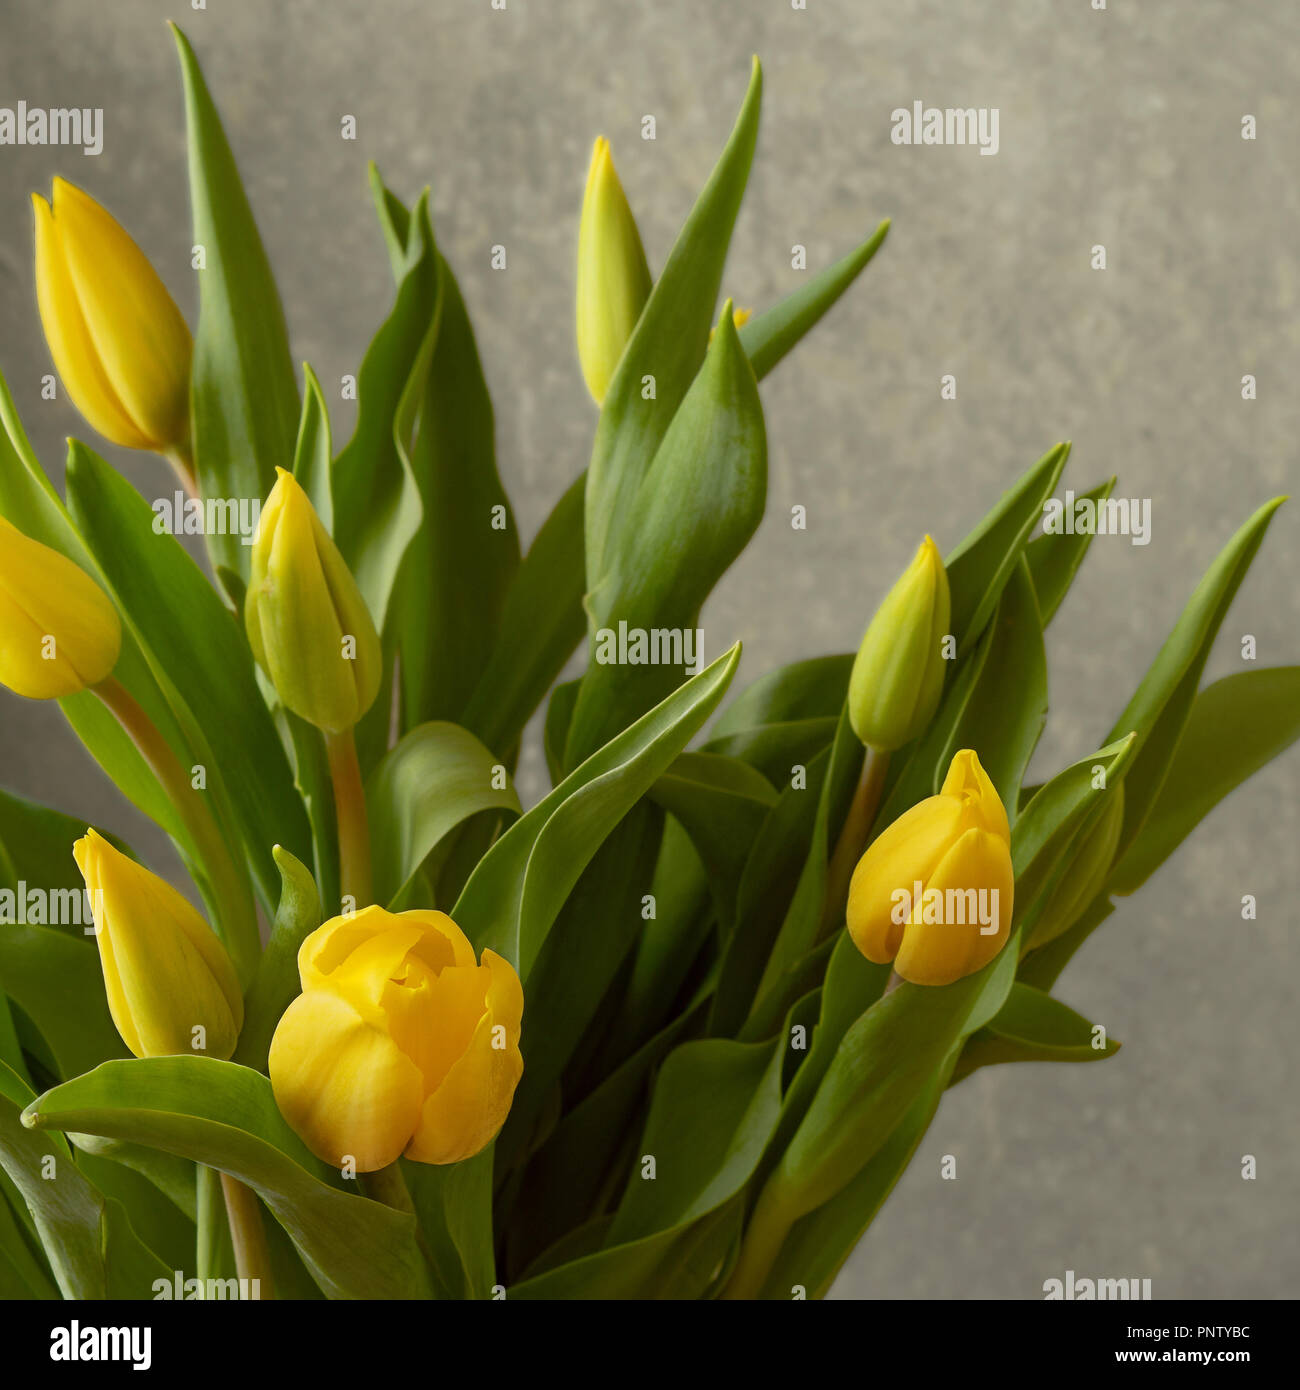 Strauß mit frischen gelben Tulpen vor einer grauen Wand, mit unentwickelten Blütenknospen Stockfoto